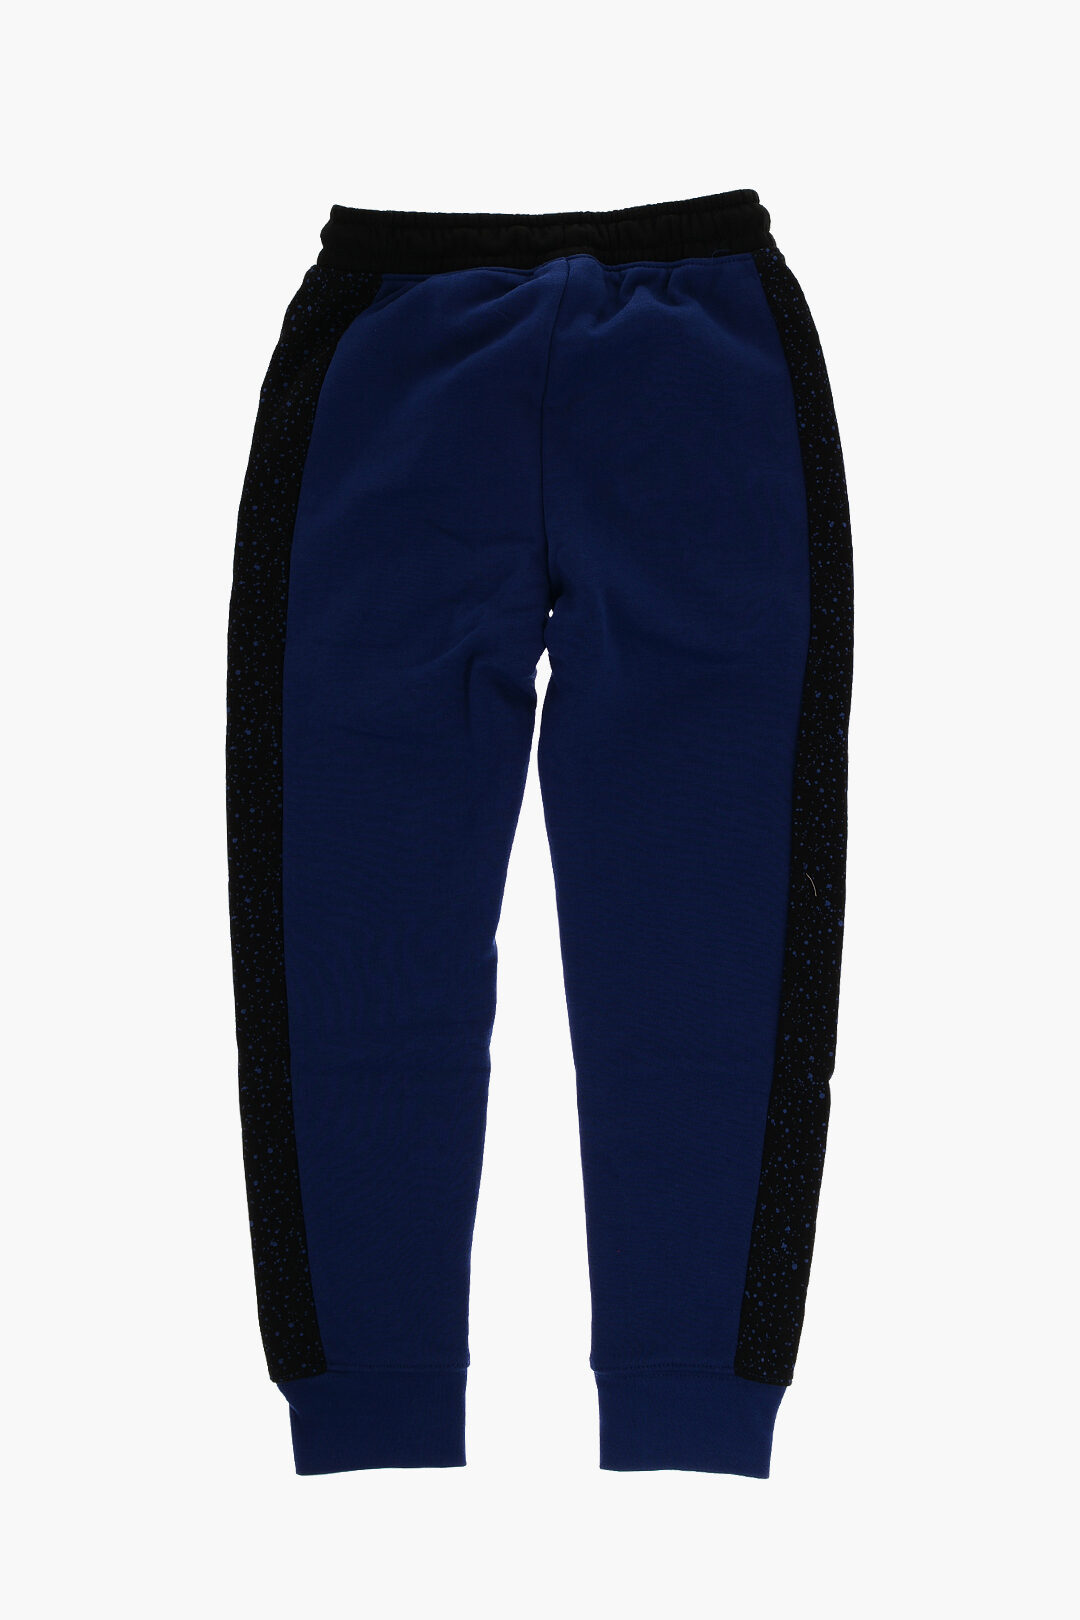 Youth Boys Nike Sportswear Tech Fleece Trousers Athletic Pants AQ9677-060  Large for sale online | eBay